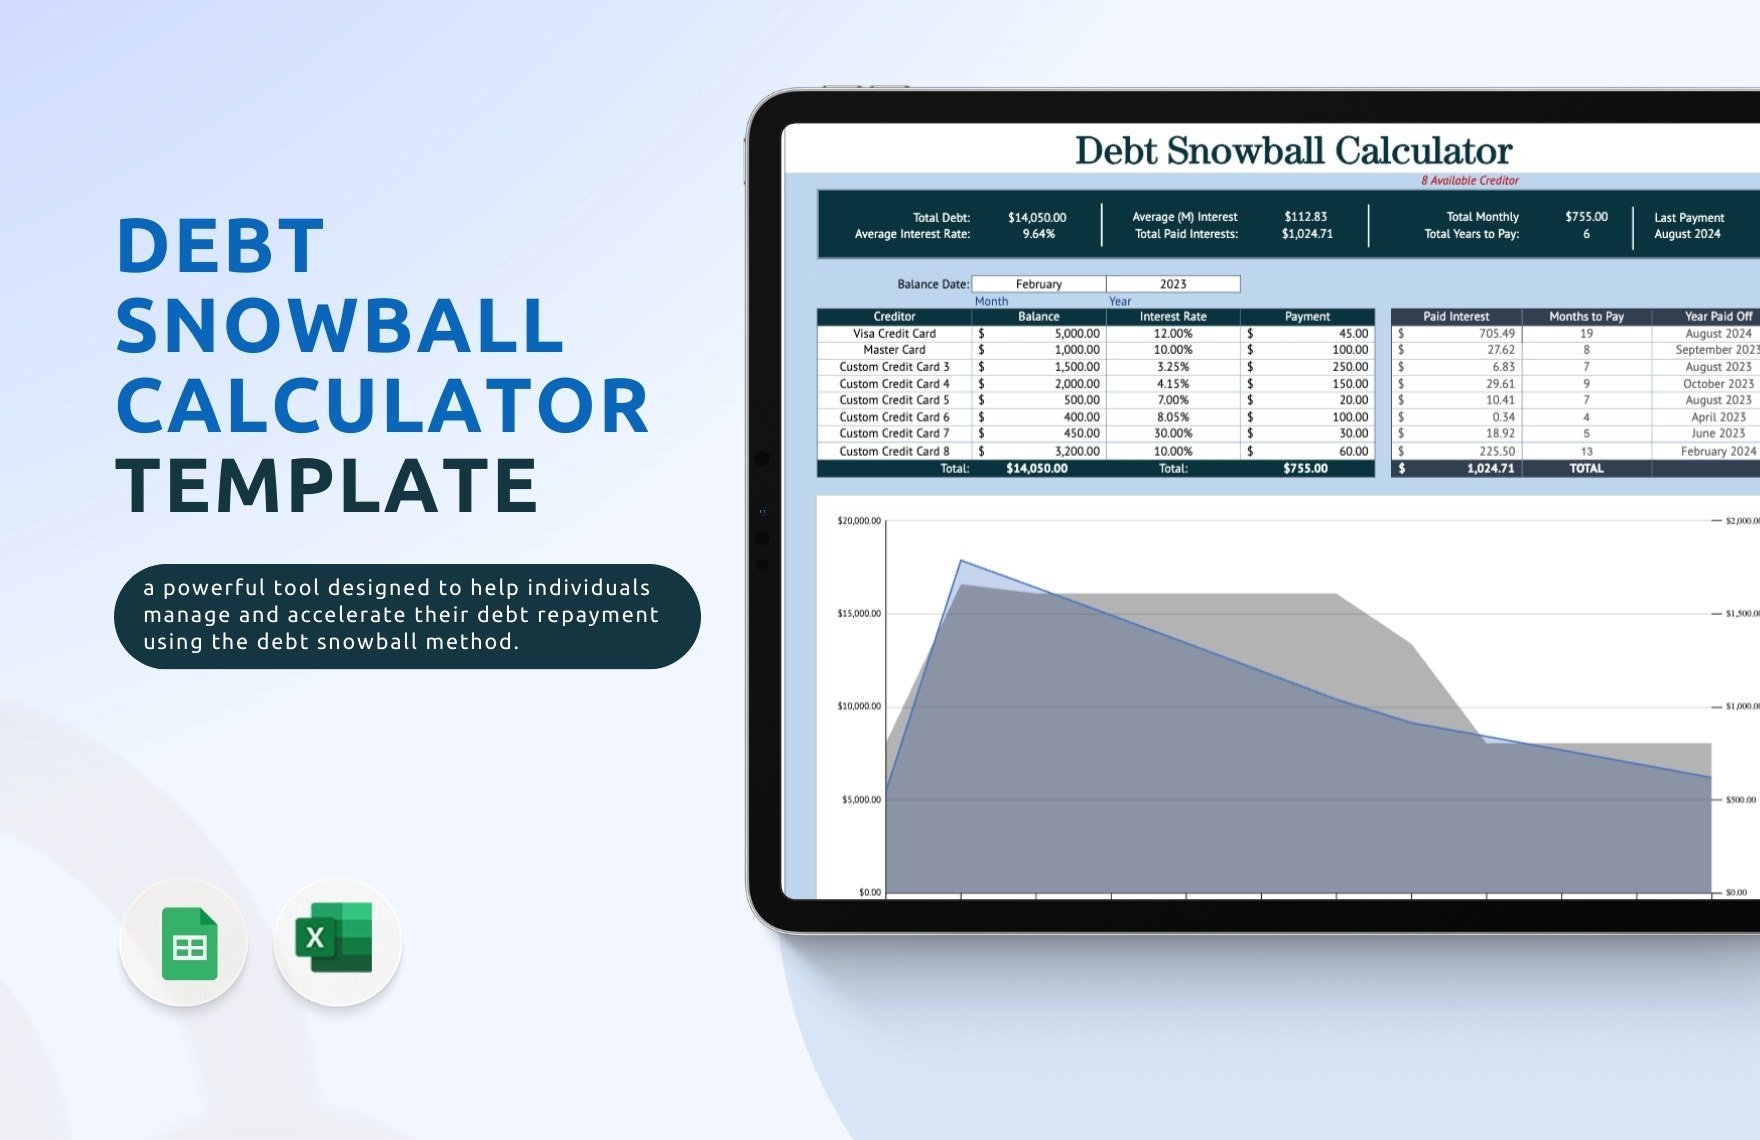 Debt Snowball Calculator Template